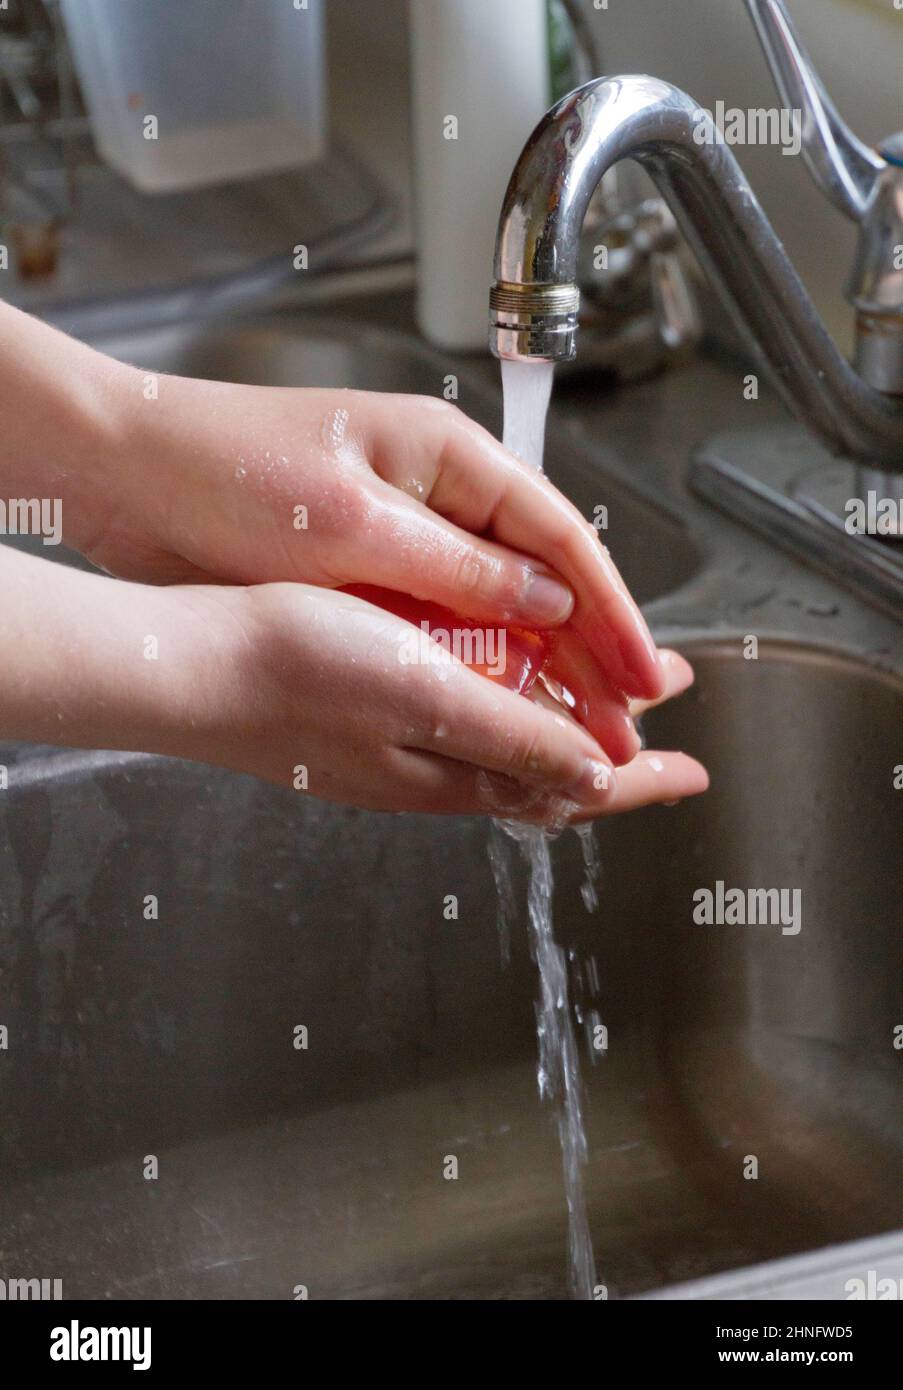 Gros plan d'une jeune personne blanche mains rincées sous un robinet de métal dans un évier de métal Banque D'Images